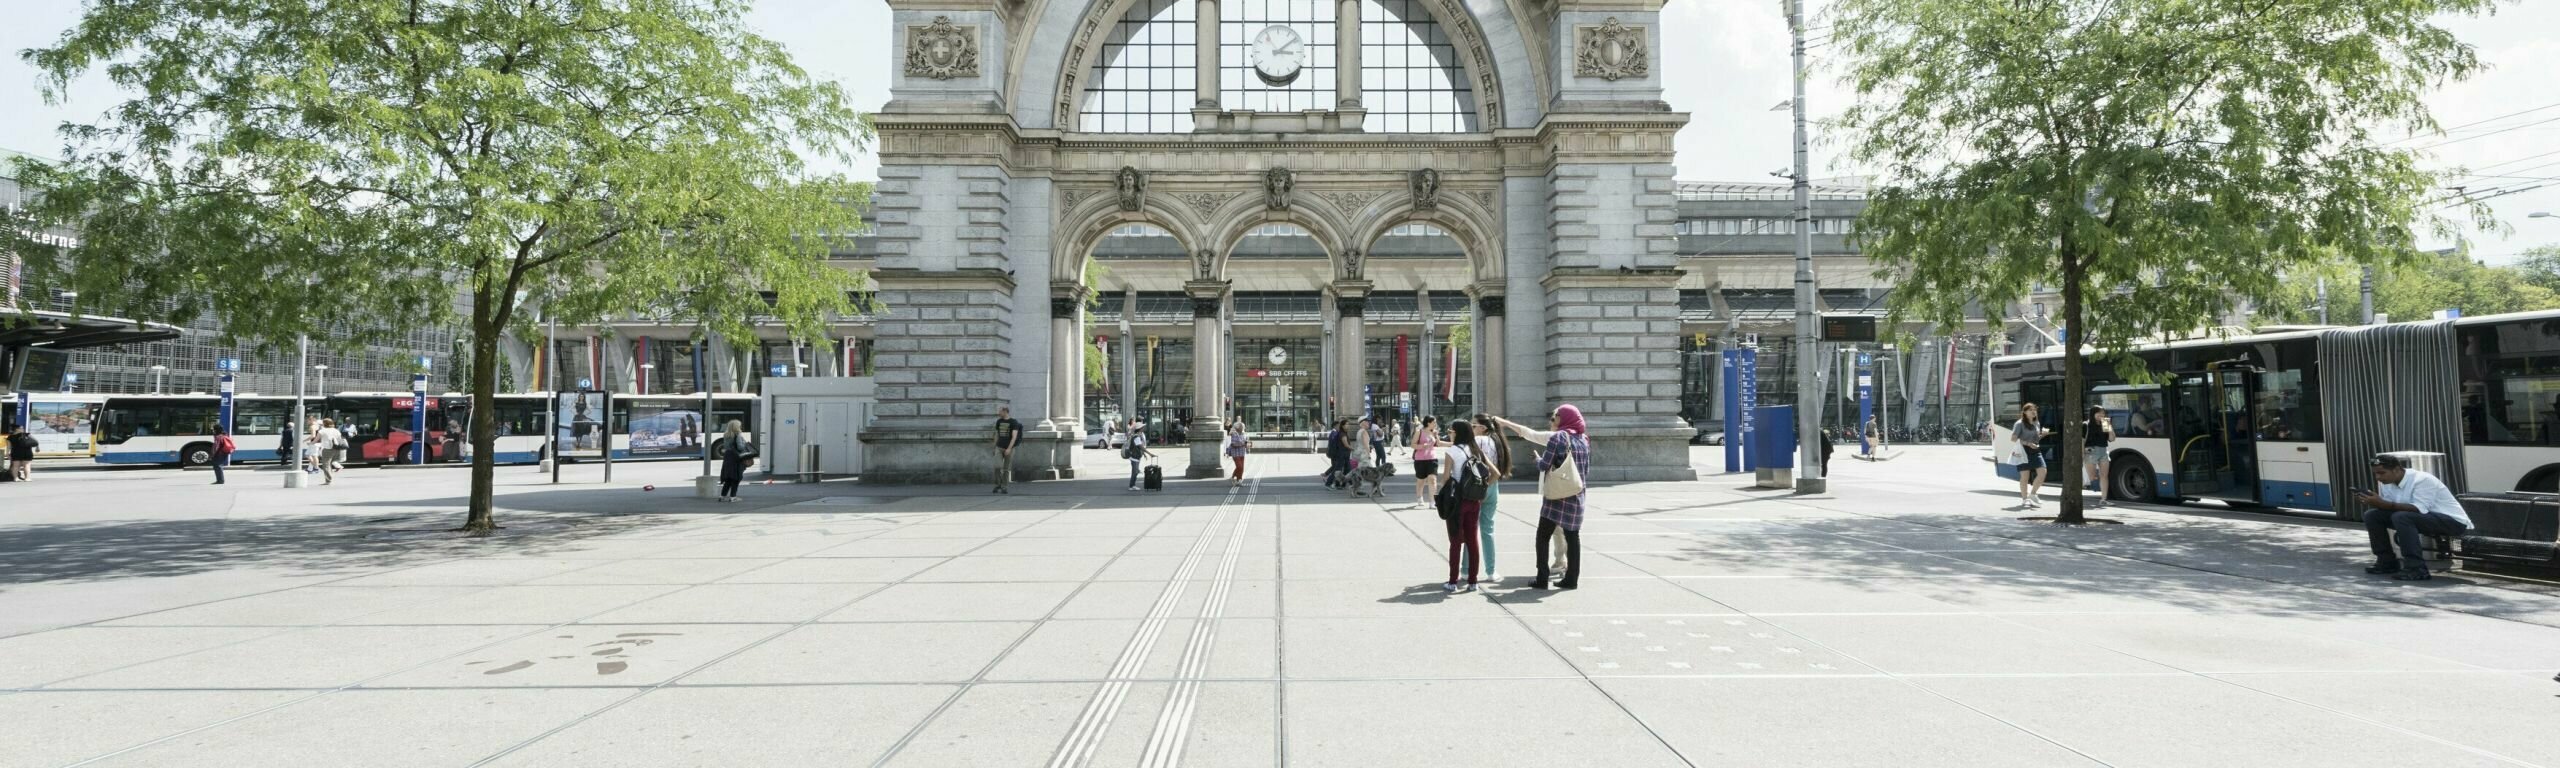 Bild vom Bahnhof Luzern